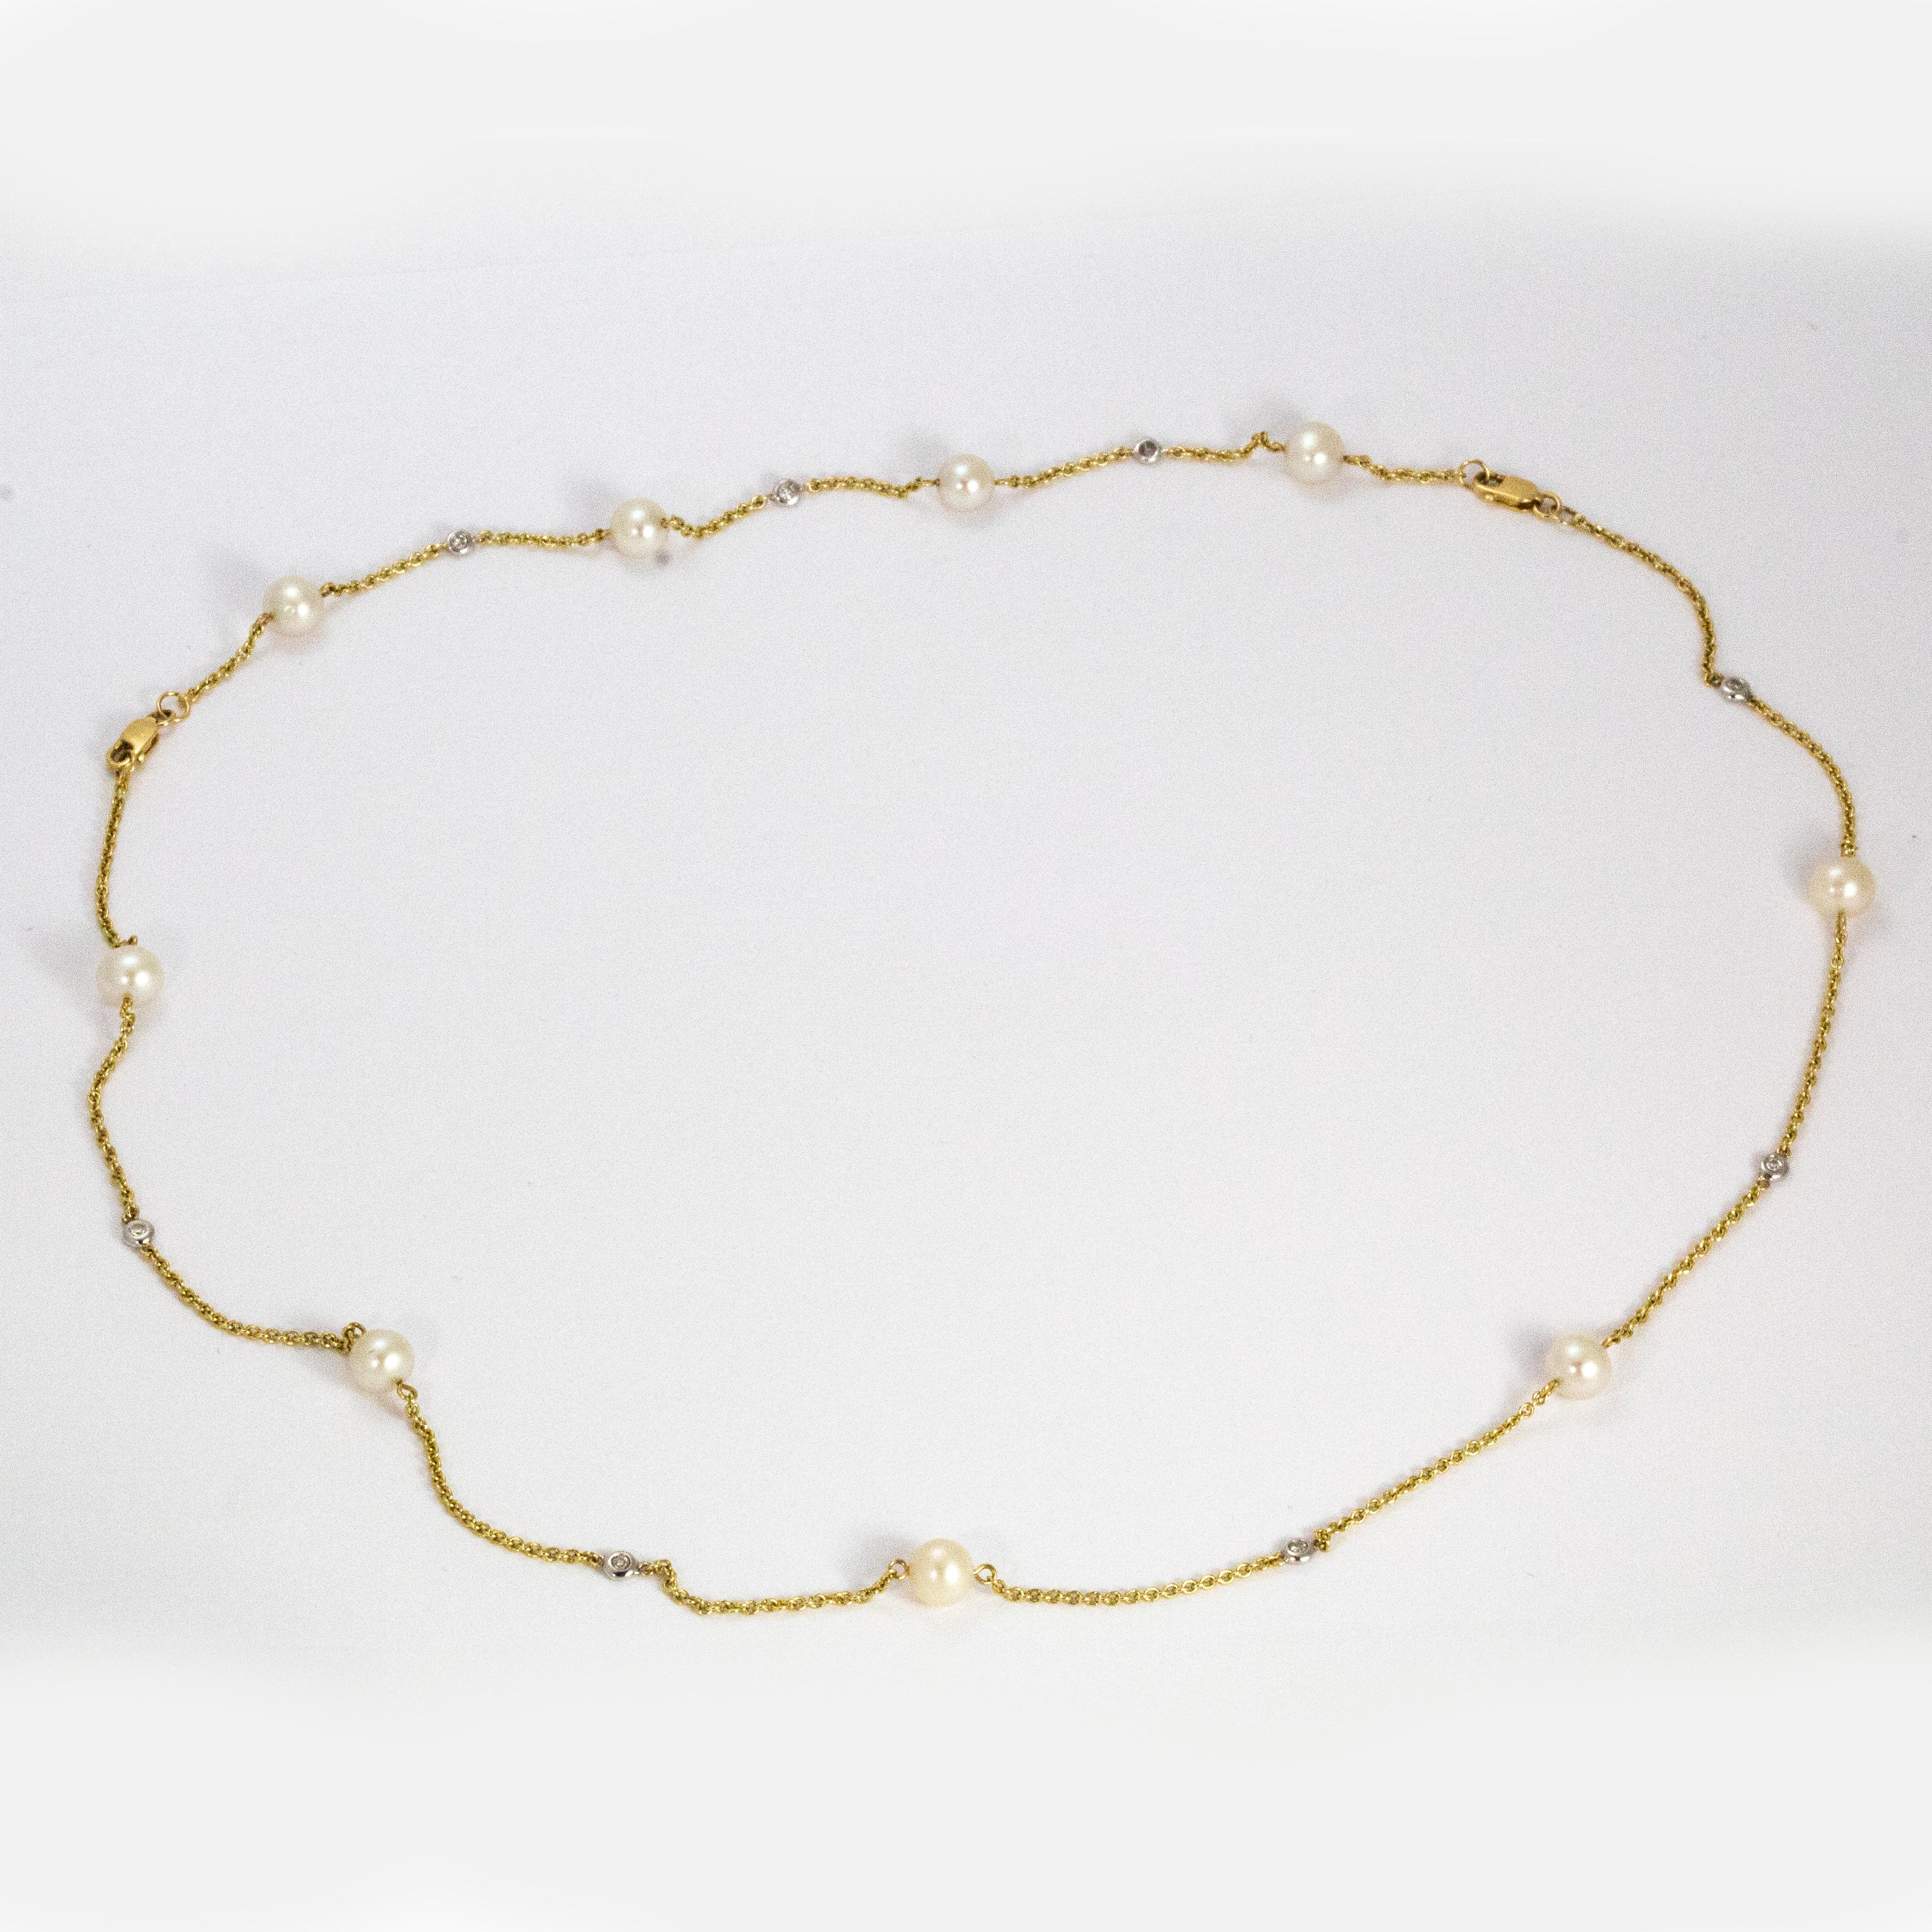 Dieses zarte und unglaublich schöne Collier aus 14 Karat Gold enthält 9 Perlen und  8 Diamanten. Wie Sie auf den Bildern sehen können, kann diese Halskette auch als Armband getragen werden!

Länge der Halskette: 16 1/2 Zoll
Länge des Armbands: 7